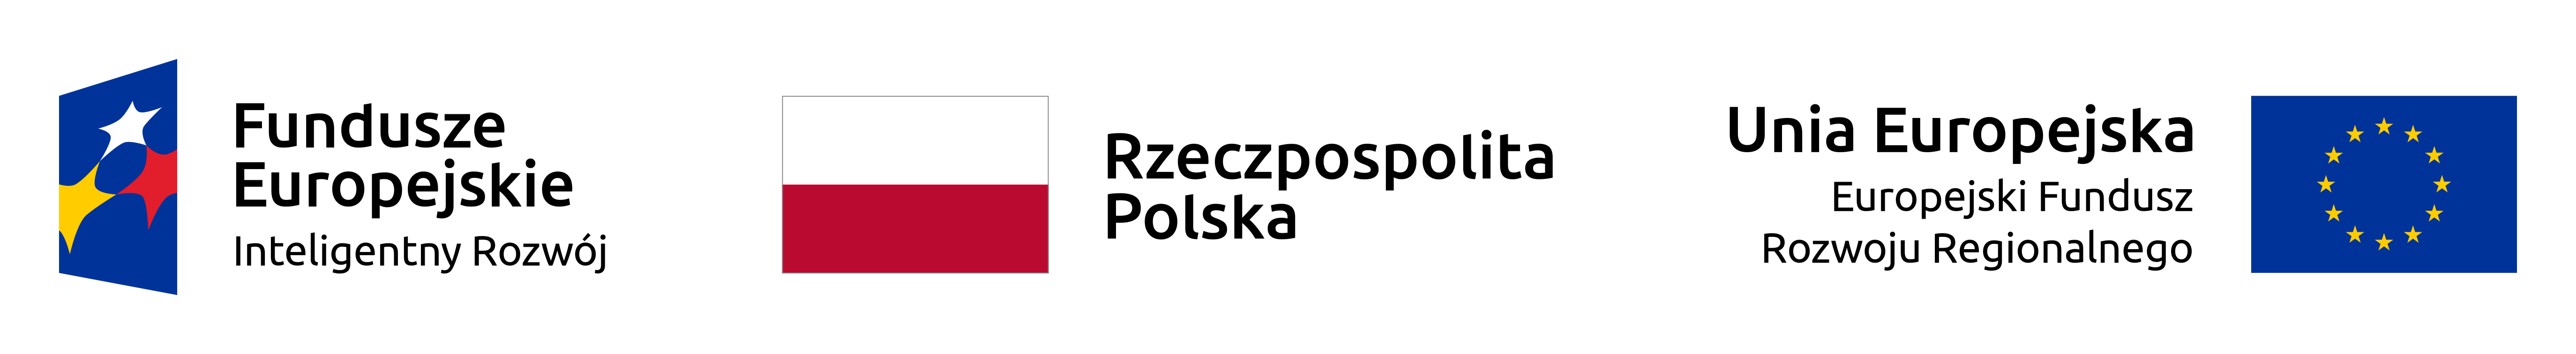 Zestawienie znaków Fundusze Europejskie Rzeczypospolita Polska Unia Europejska